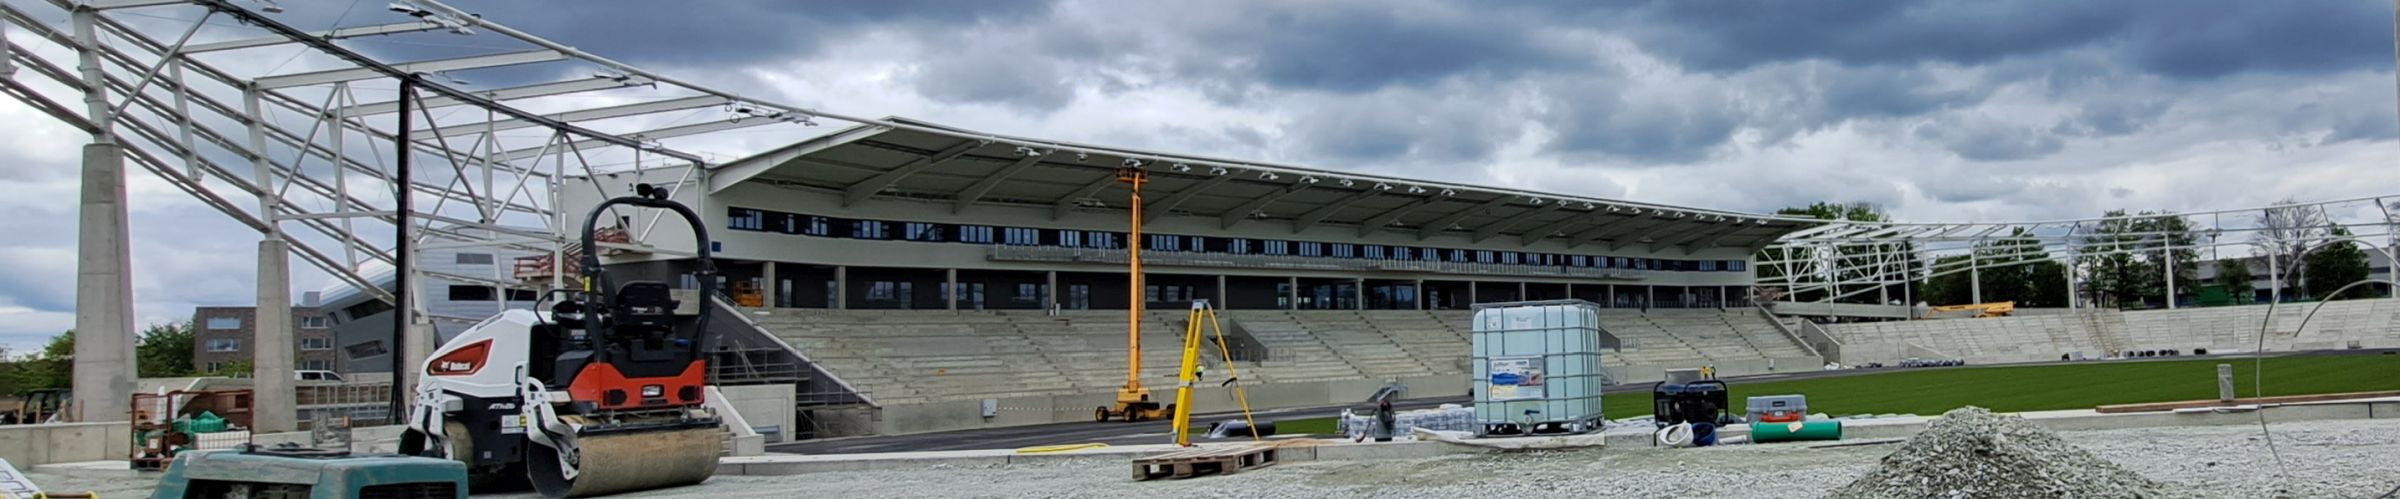 Bautafel zum Um- und Ausbau Heinz-Steyer-Stadion